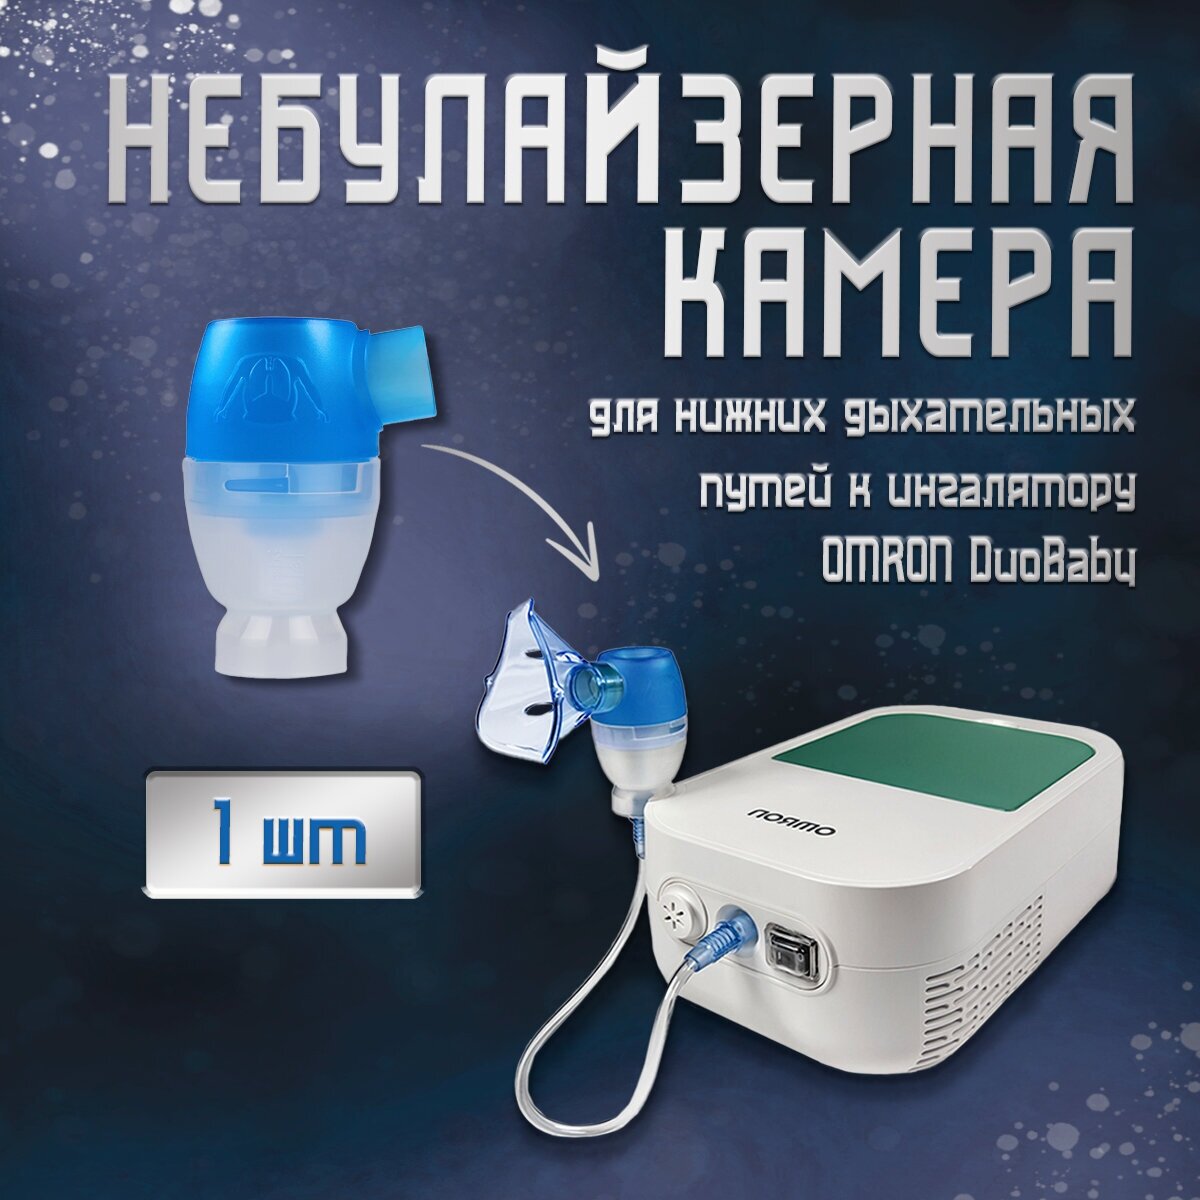 Небулайзерная камера OMRON для нижних дыхательных путей для небулайзера DuoBaby (NE-С301-RU)